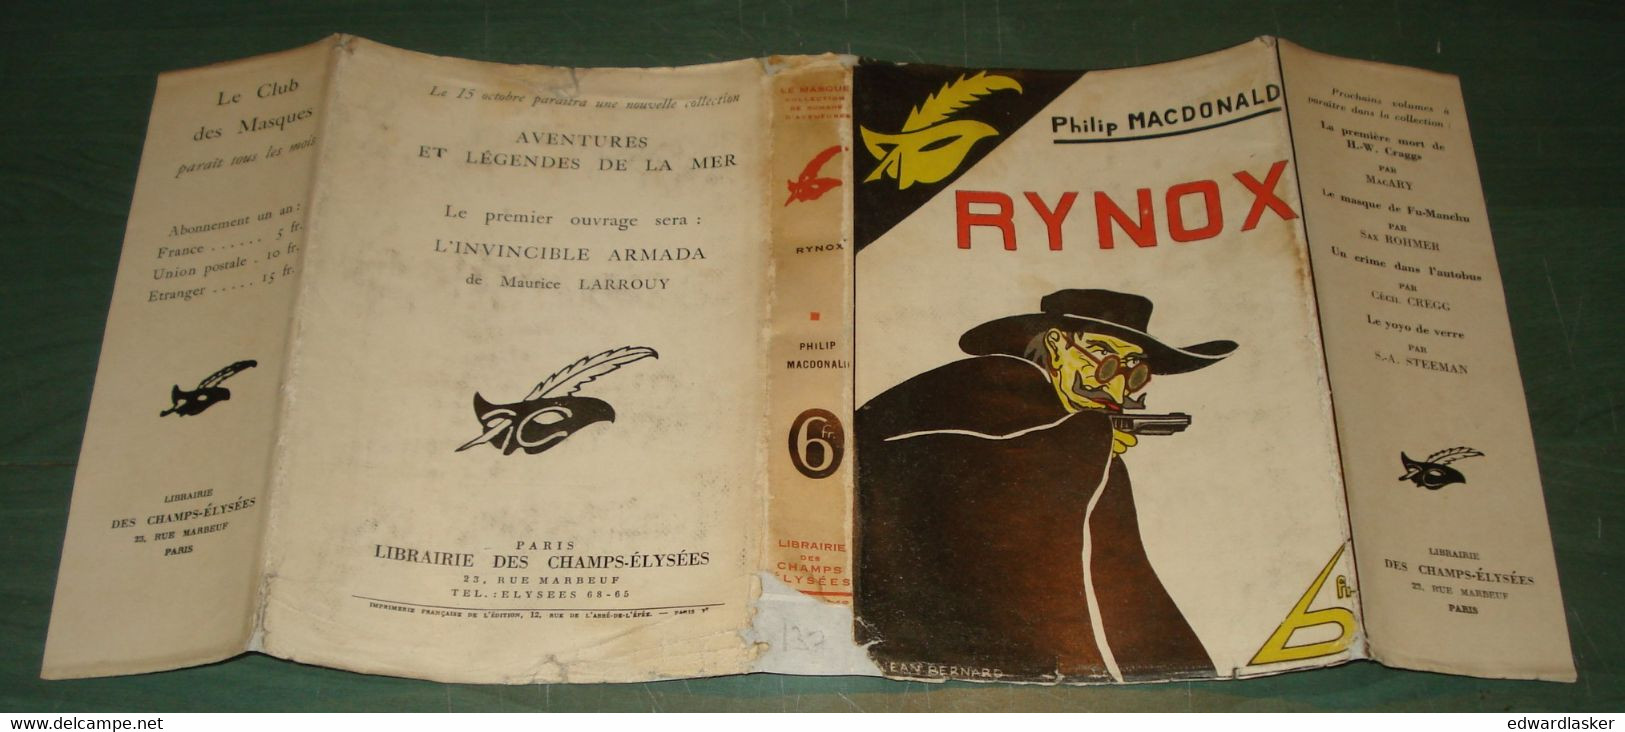 Le MASQUE n°137 : Rynox /Philip MacDonald - jaquette 1933